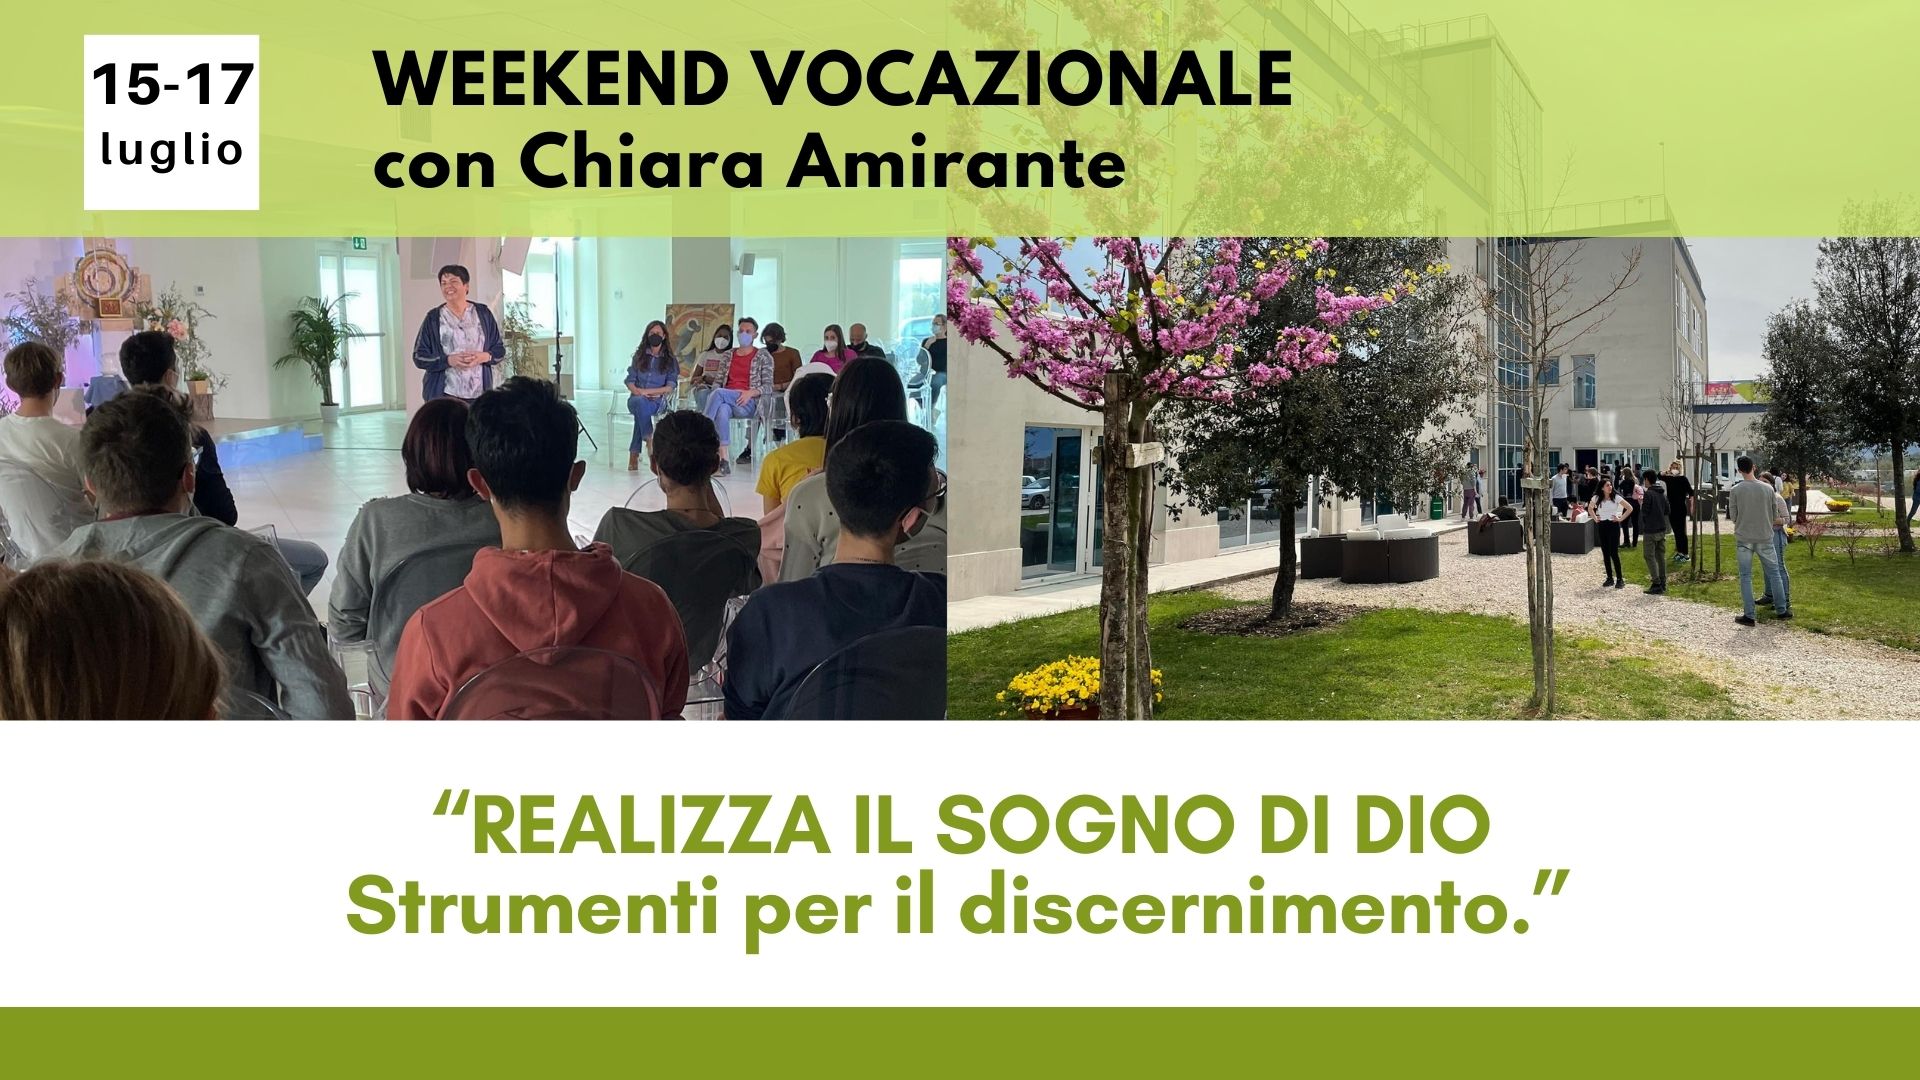 15-17 luglio - Weekend Vocazionale - Chiara Amirante - Nuovi Orizzonti